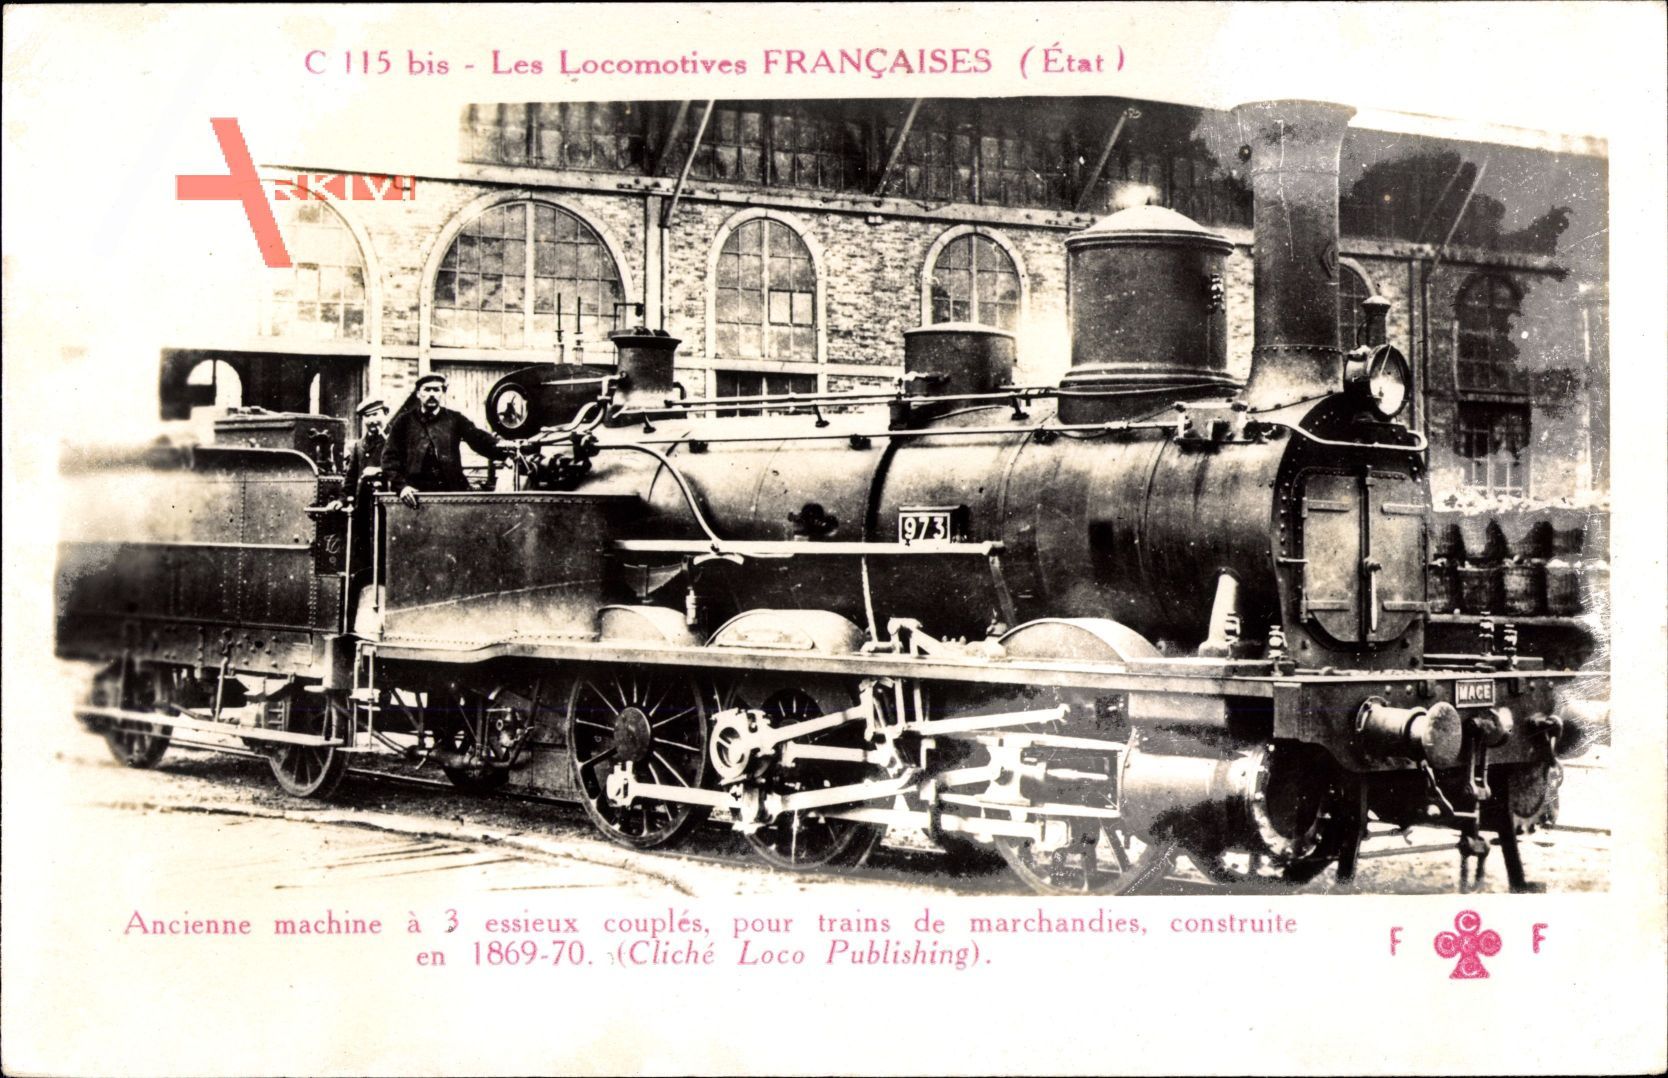 Französische Eisenbahn, Locomotive, No. 973, C 115 bis, Etat